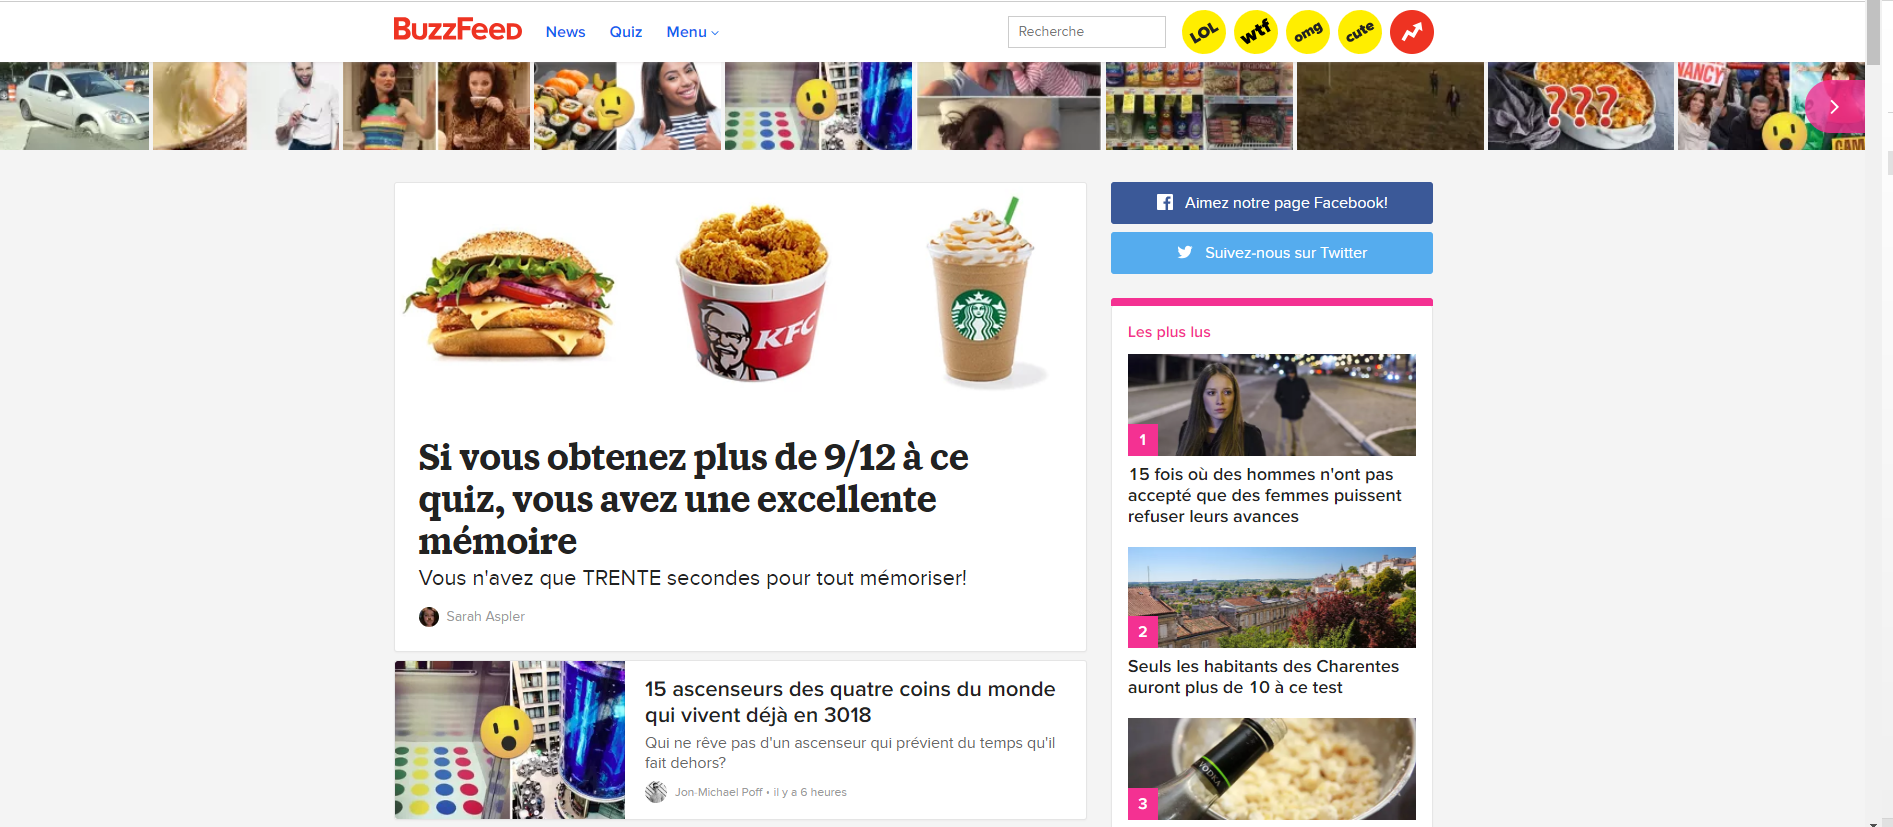 BuzzFeed France devrait cesser son activité dans l'Hexagone.